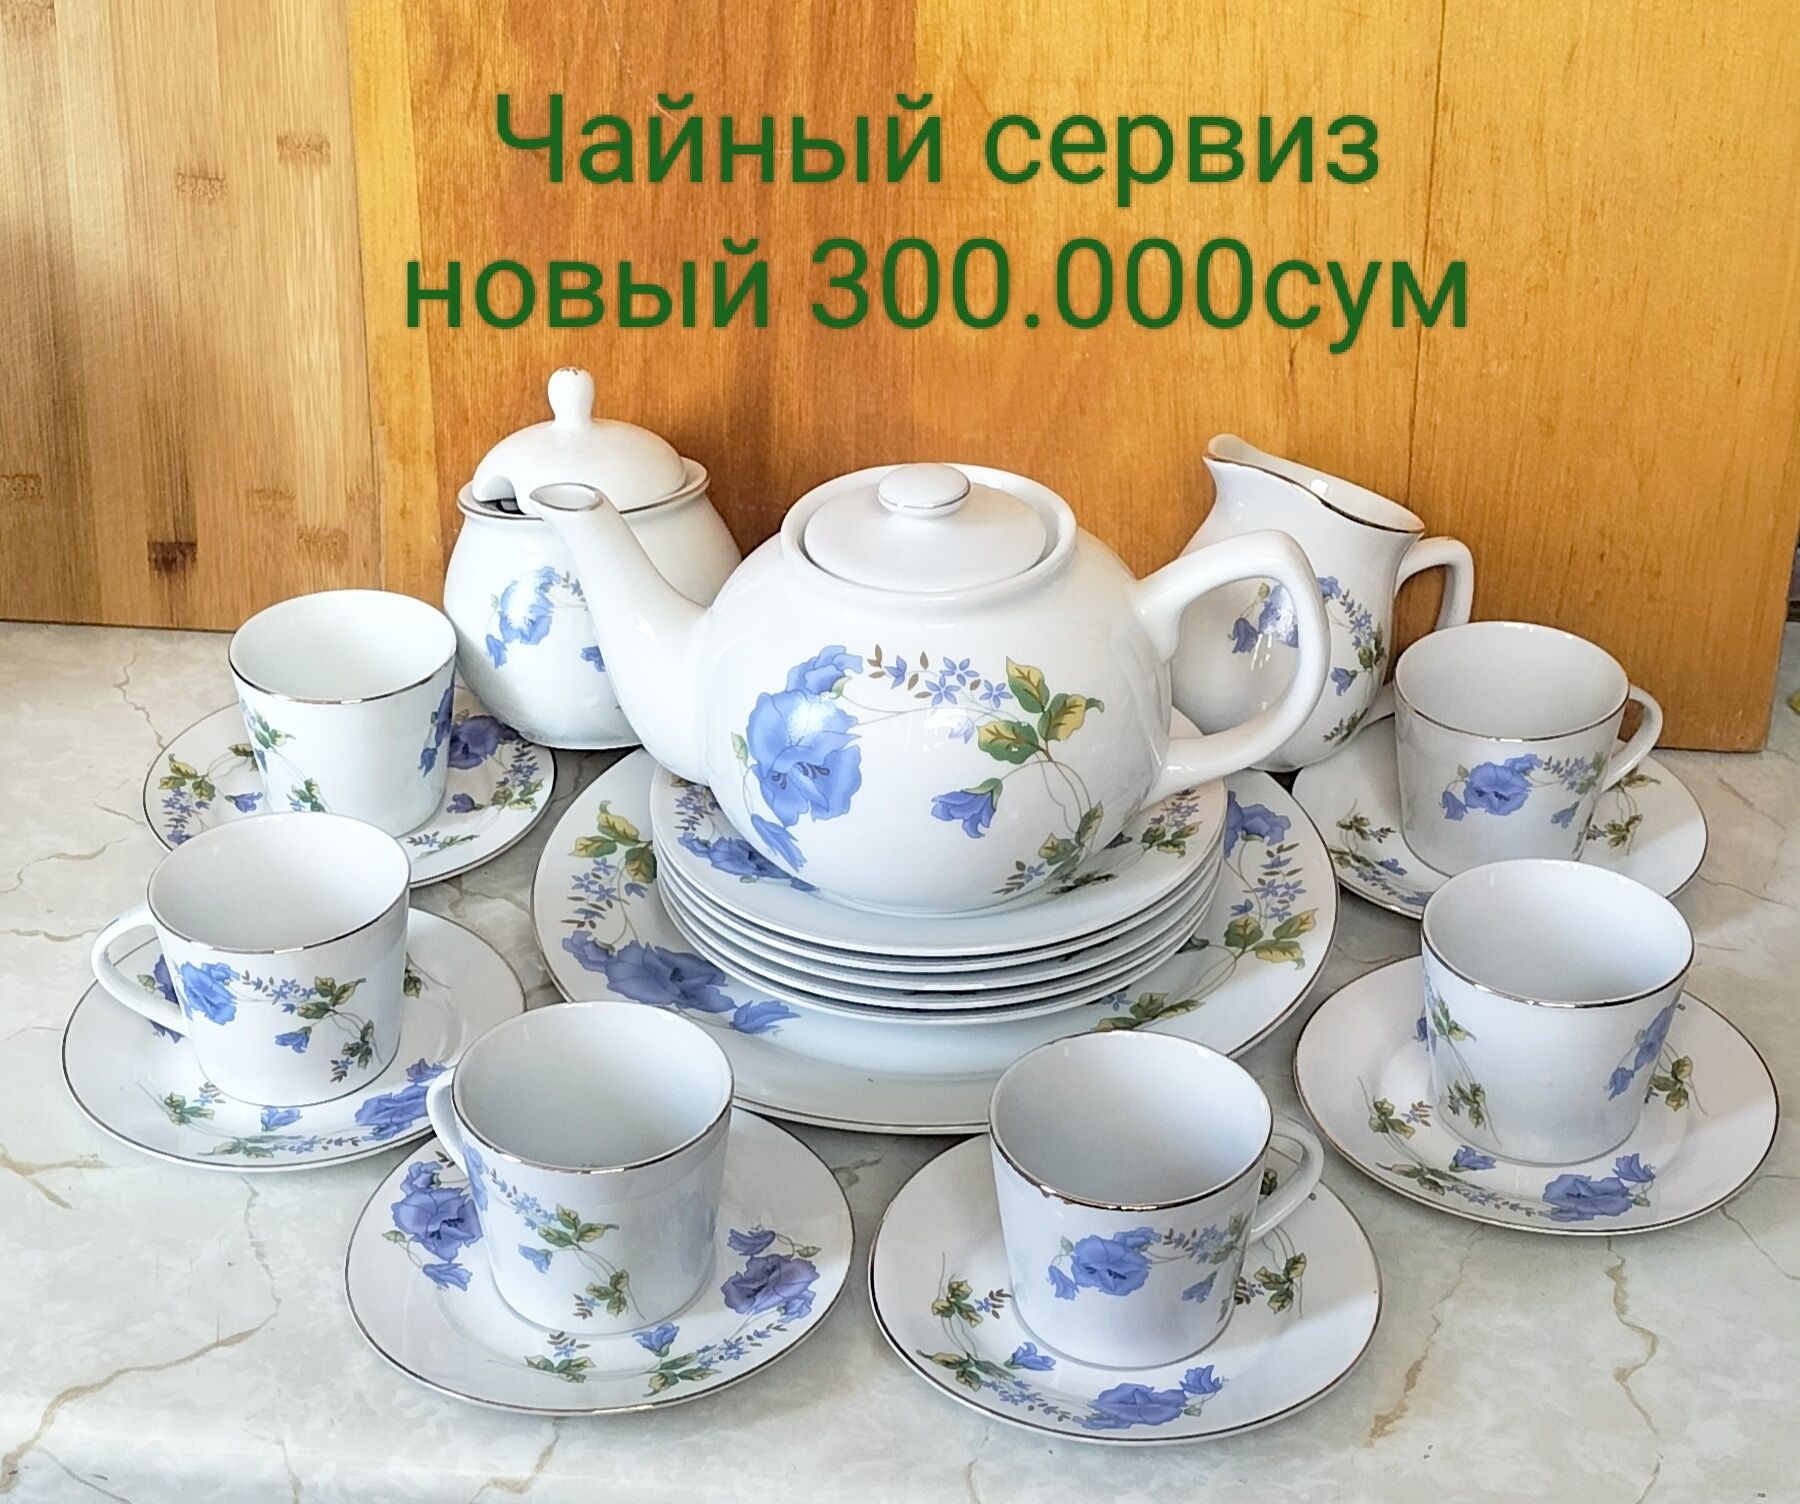 Продаю различную посуду-чайники, чашки, чайный сервиз смотрите фото
об